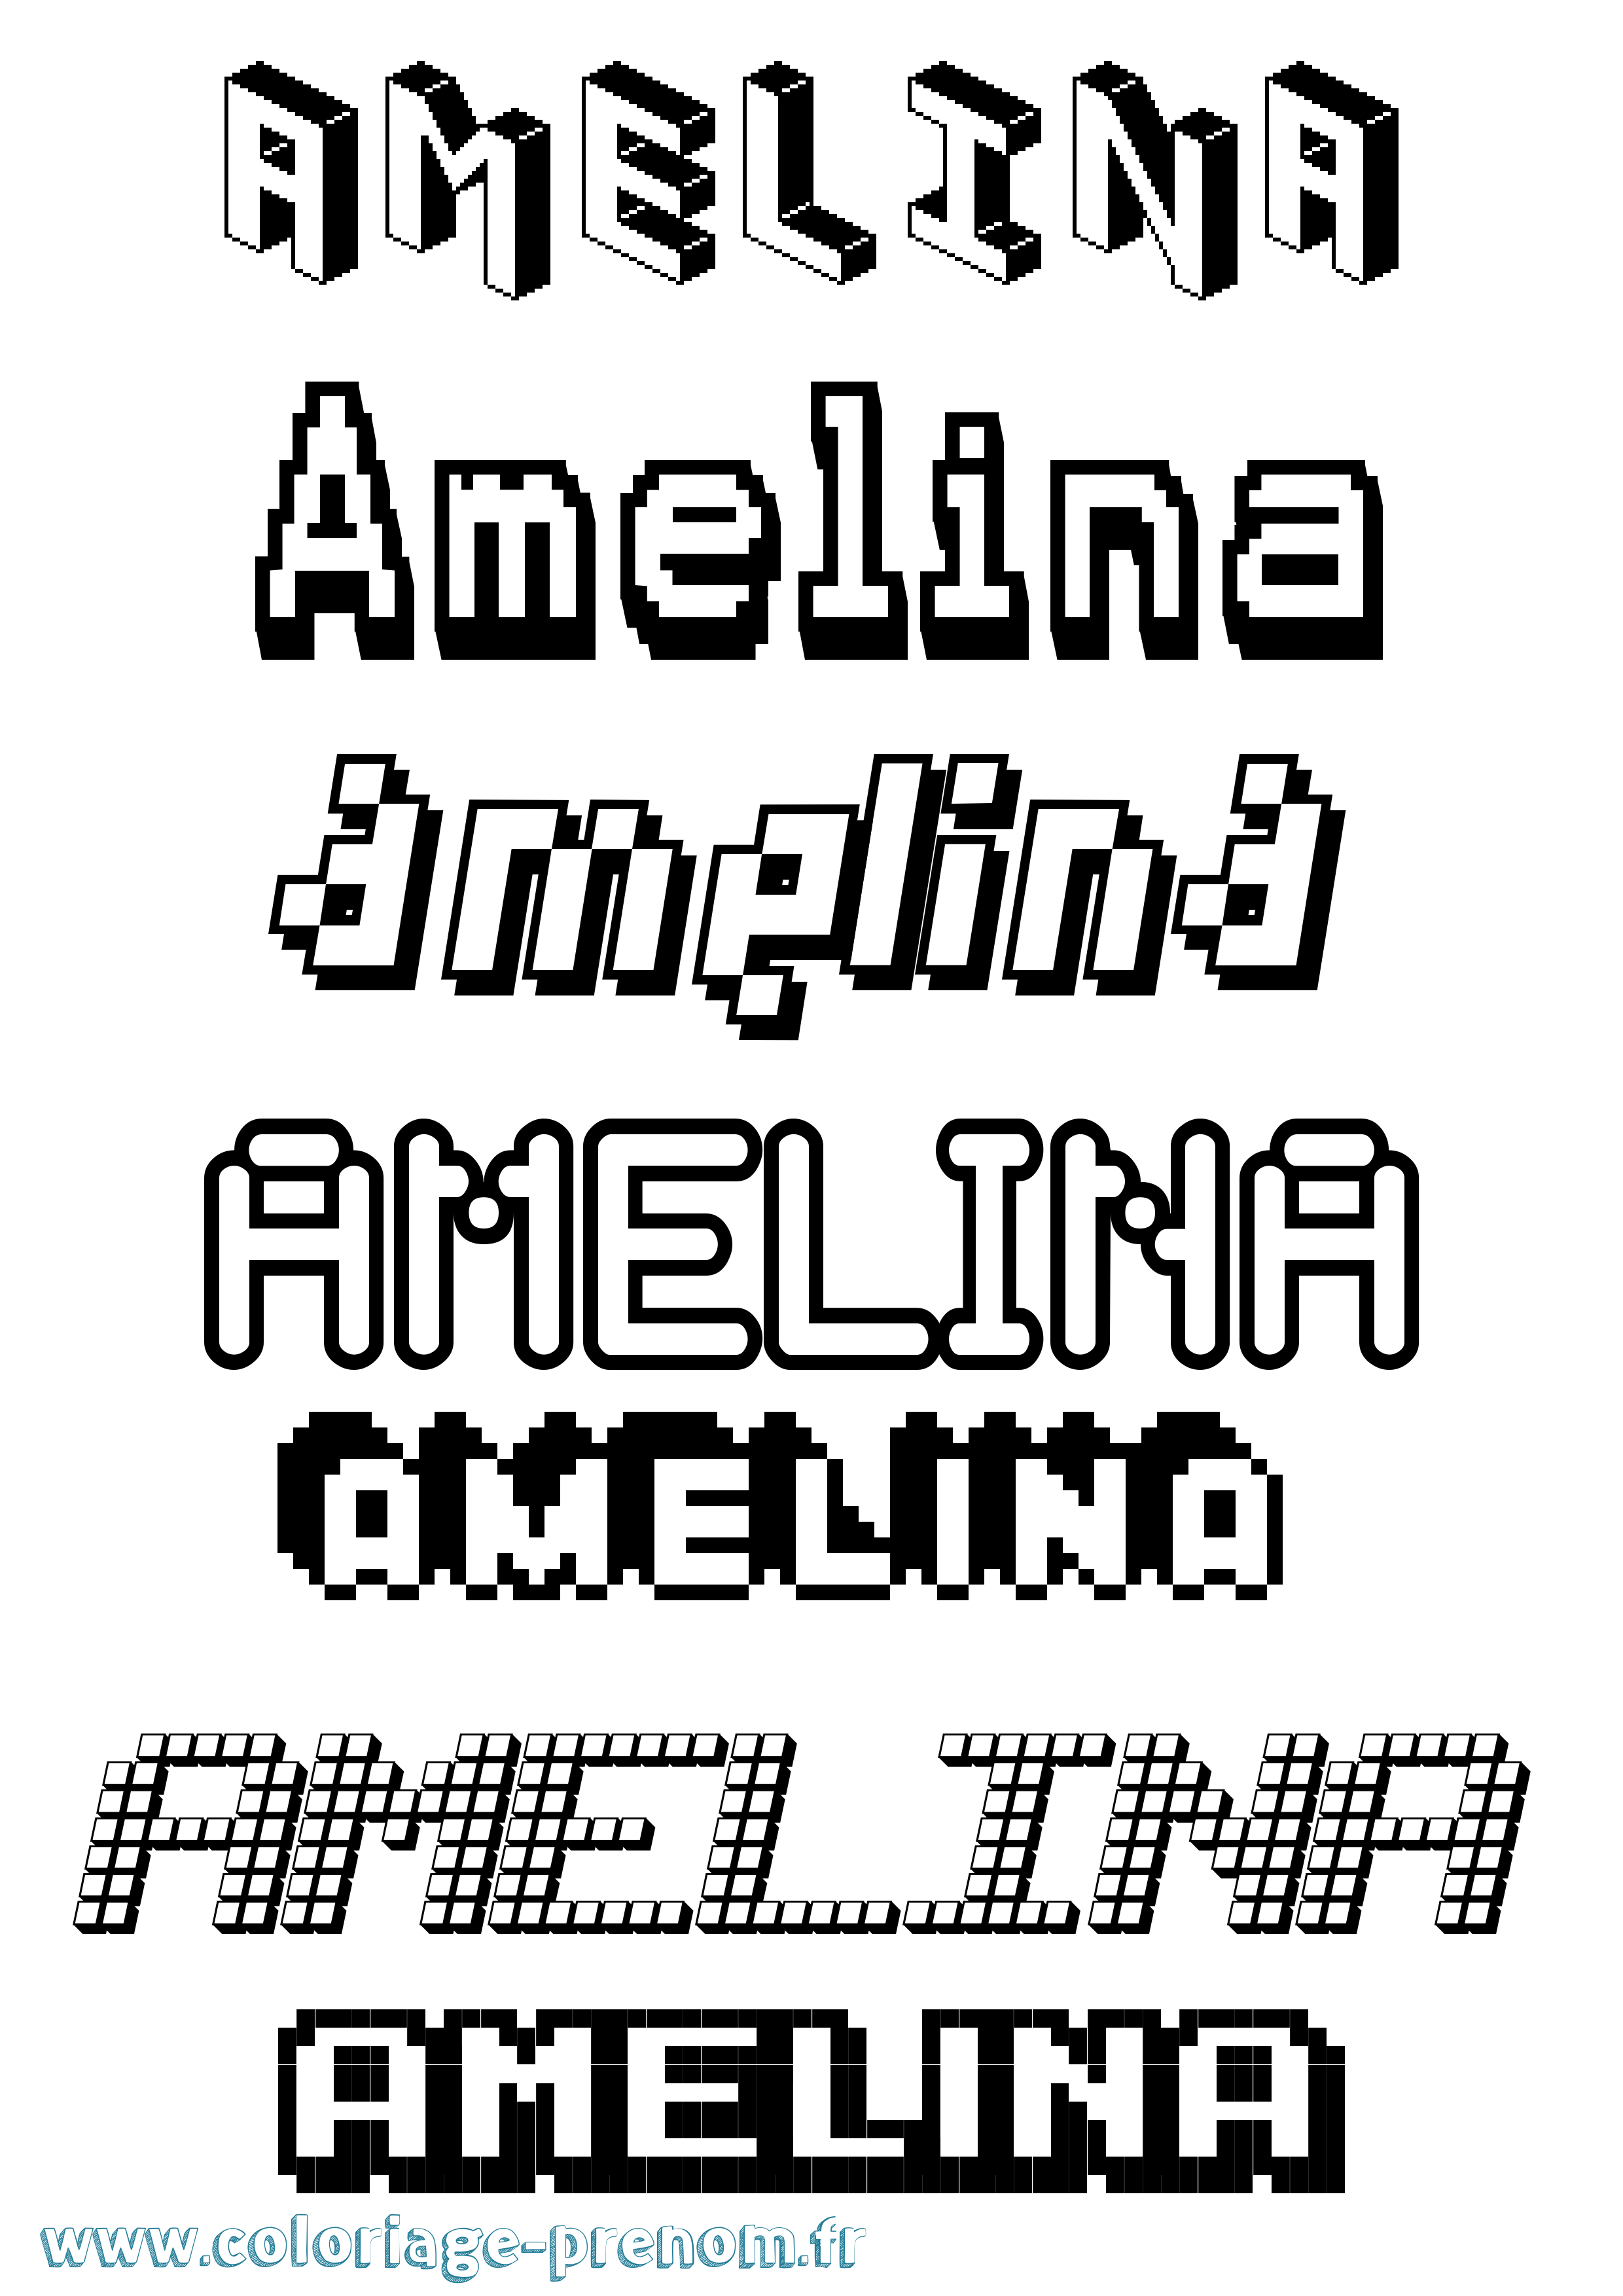 Coloriage prénom Amelina Pixel